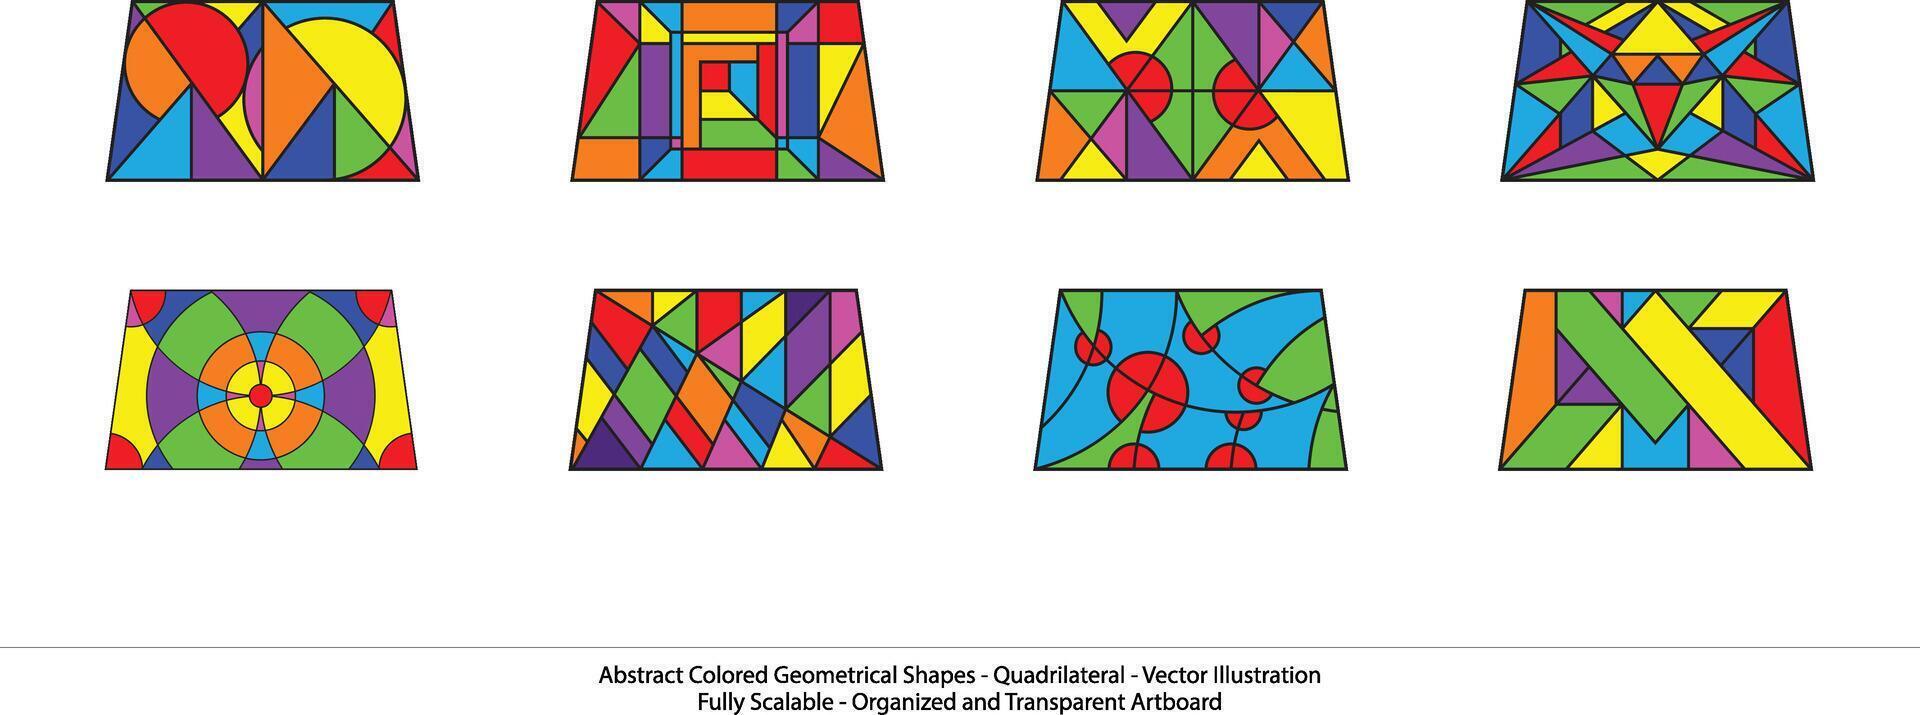 uppsättning av fyrsidig former. regnbåge färger. abstrakt färgad geometrisk former - fyrsidig- vektor illustration. modern vägg konst.lekfull geometrisk former skapande en känsla av rörelse.